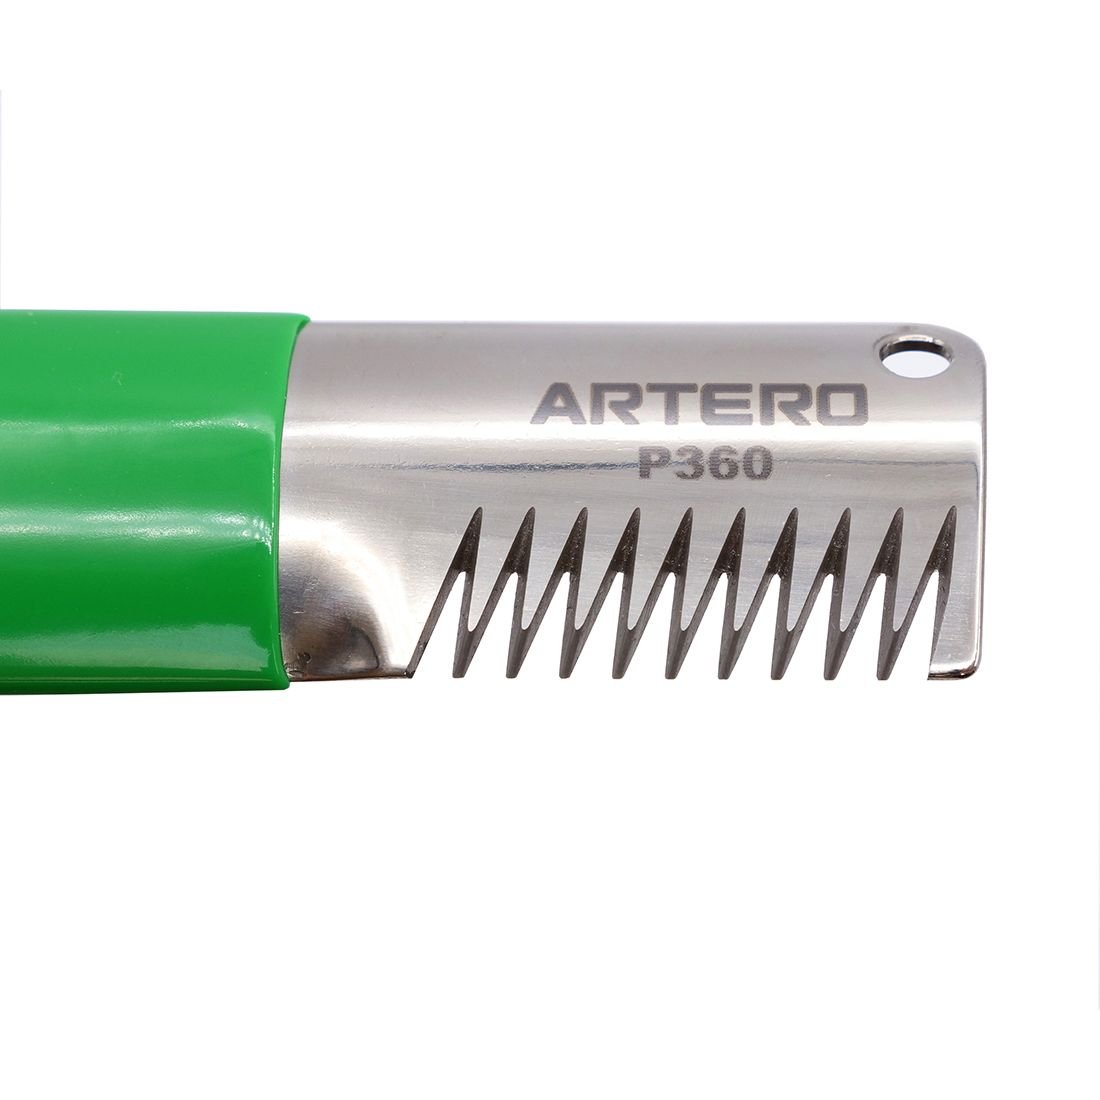 Нож для стрипинга Artero, 9 зубьев, зеленый - фото 4